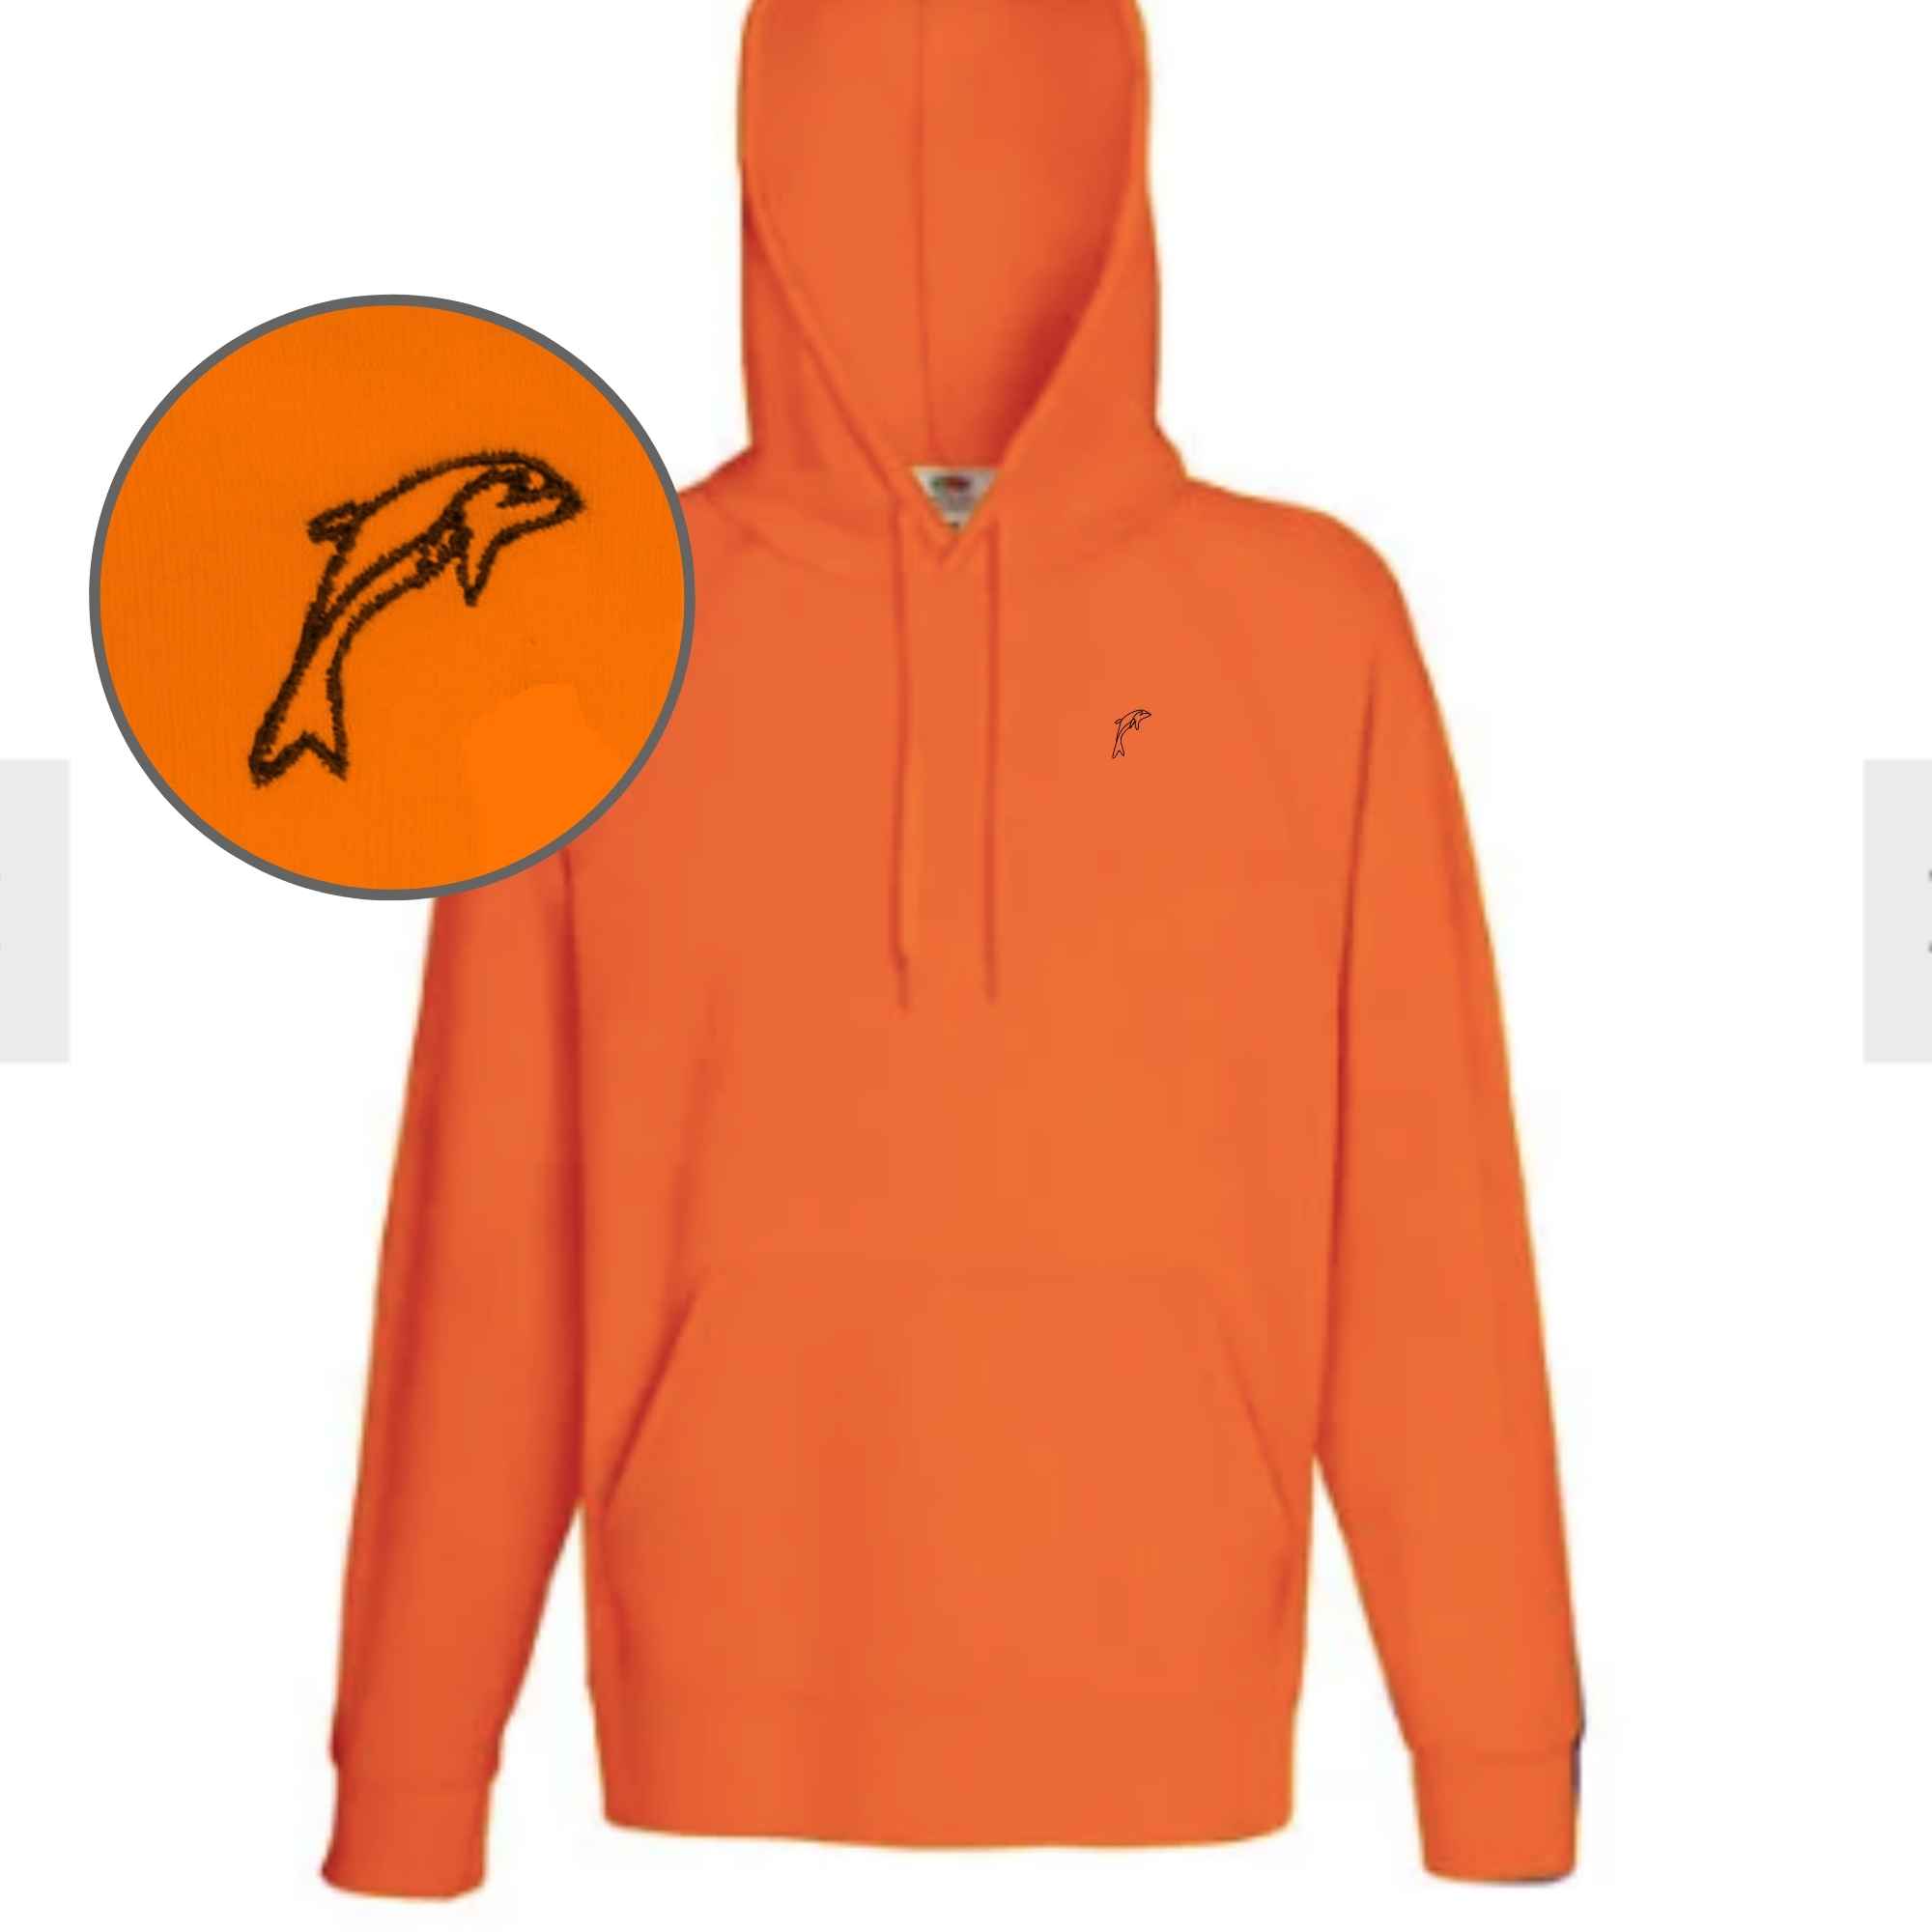 Bestickter Hoodie mit Delphin-Motiv auf der Brust in der Farbe Orange